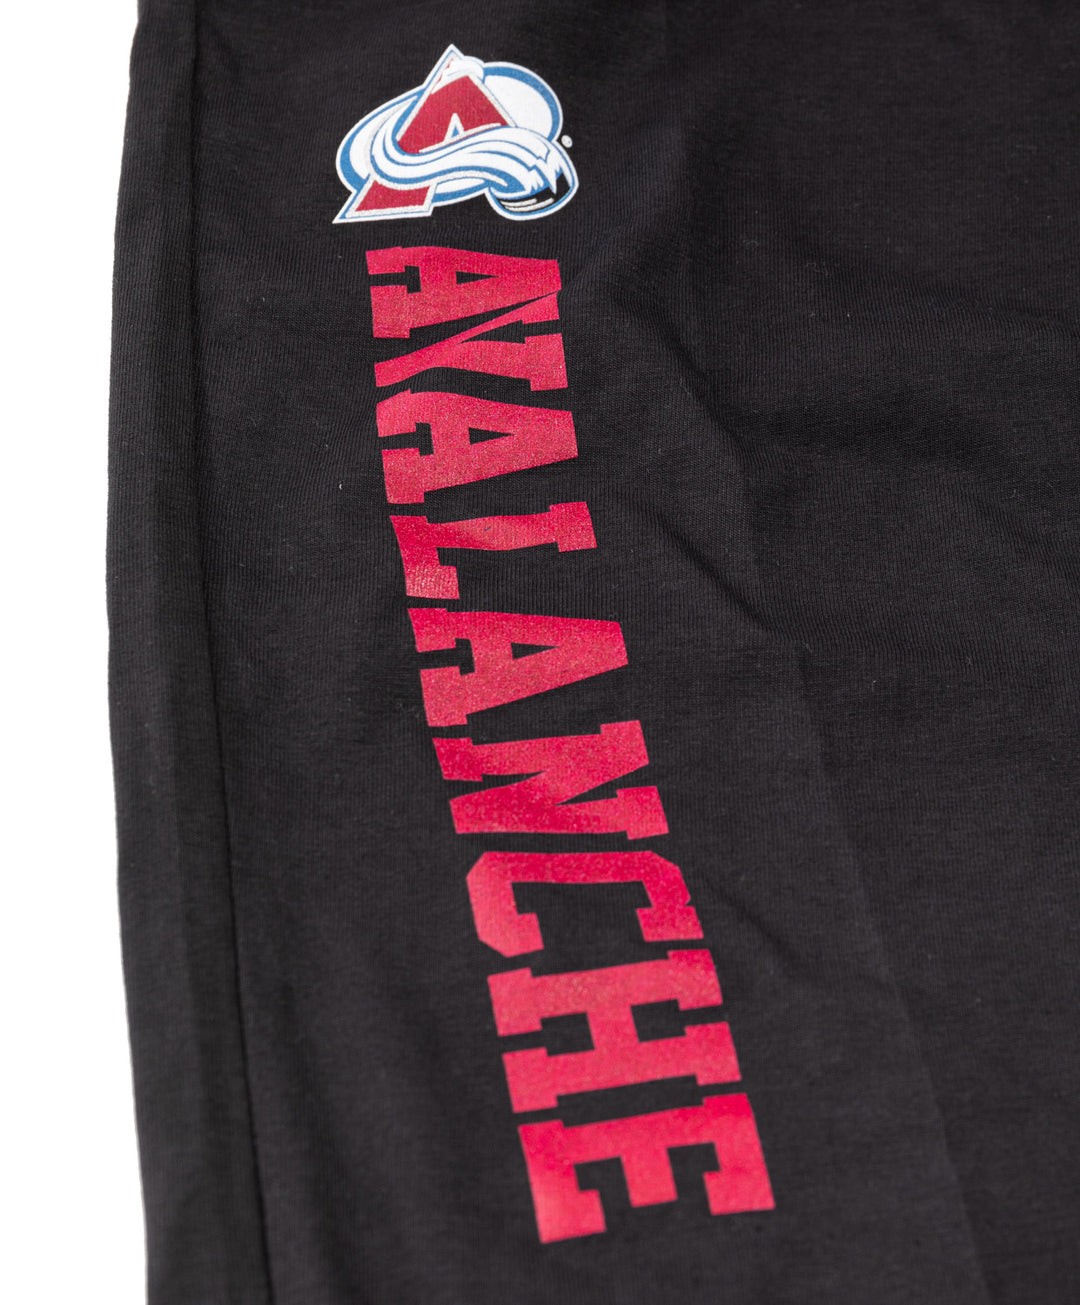 Colorado Avalanche Men's Cotton Jersey Pants